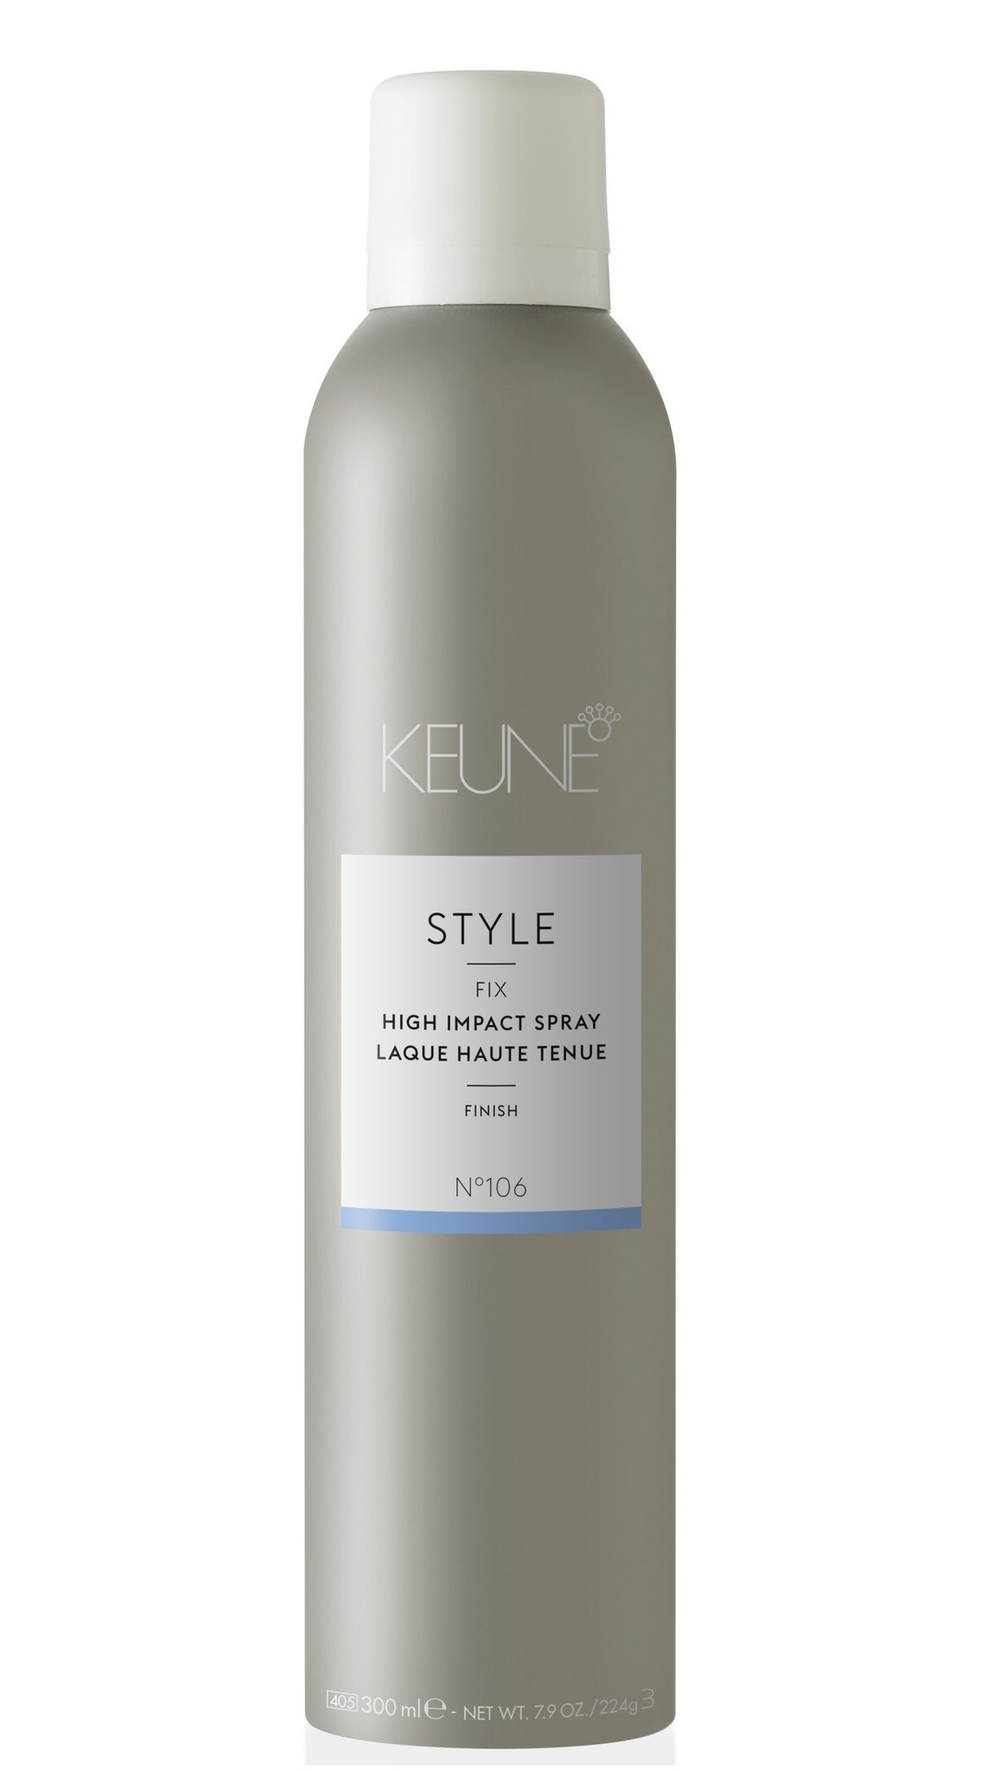 Keune Стиль Лак для волос сильной фиксации № 106 STYLE HIGH IMPACT SPRAY 300 мл